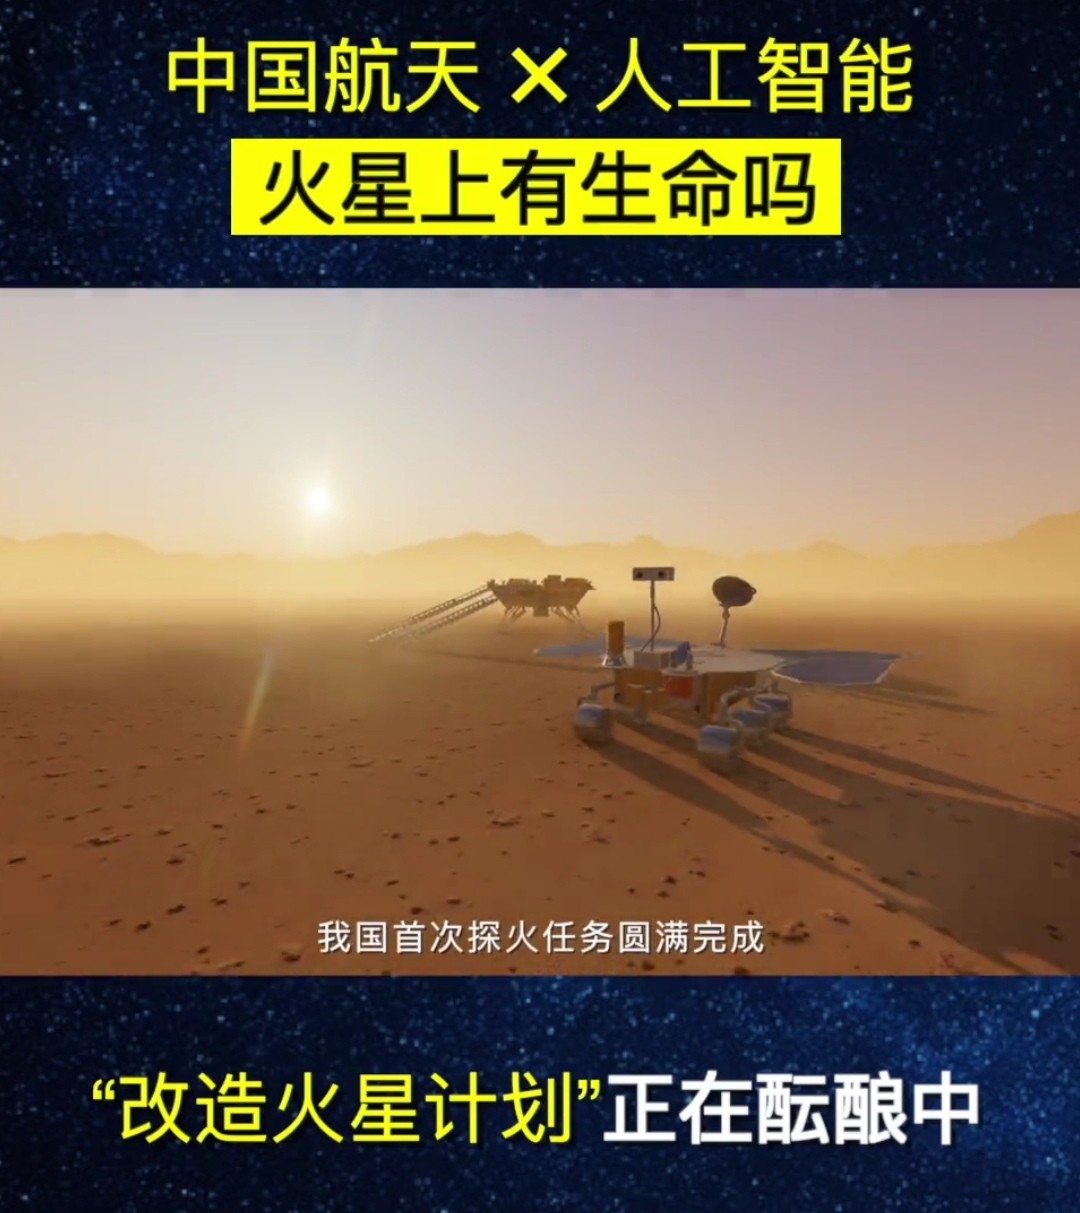 中国科学家发现火星曾有生命证据：陨石有碳颗粒